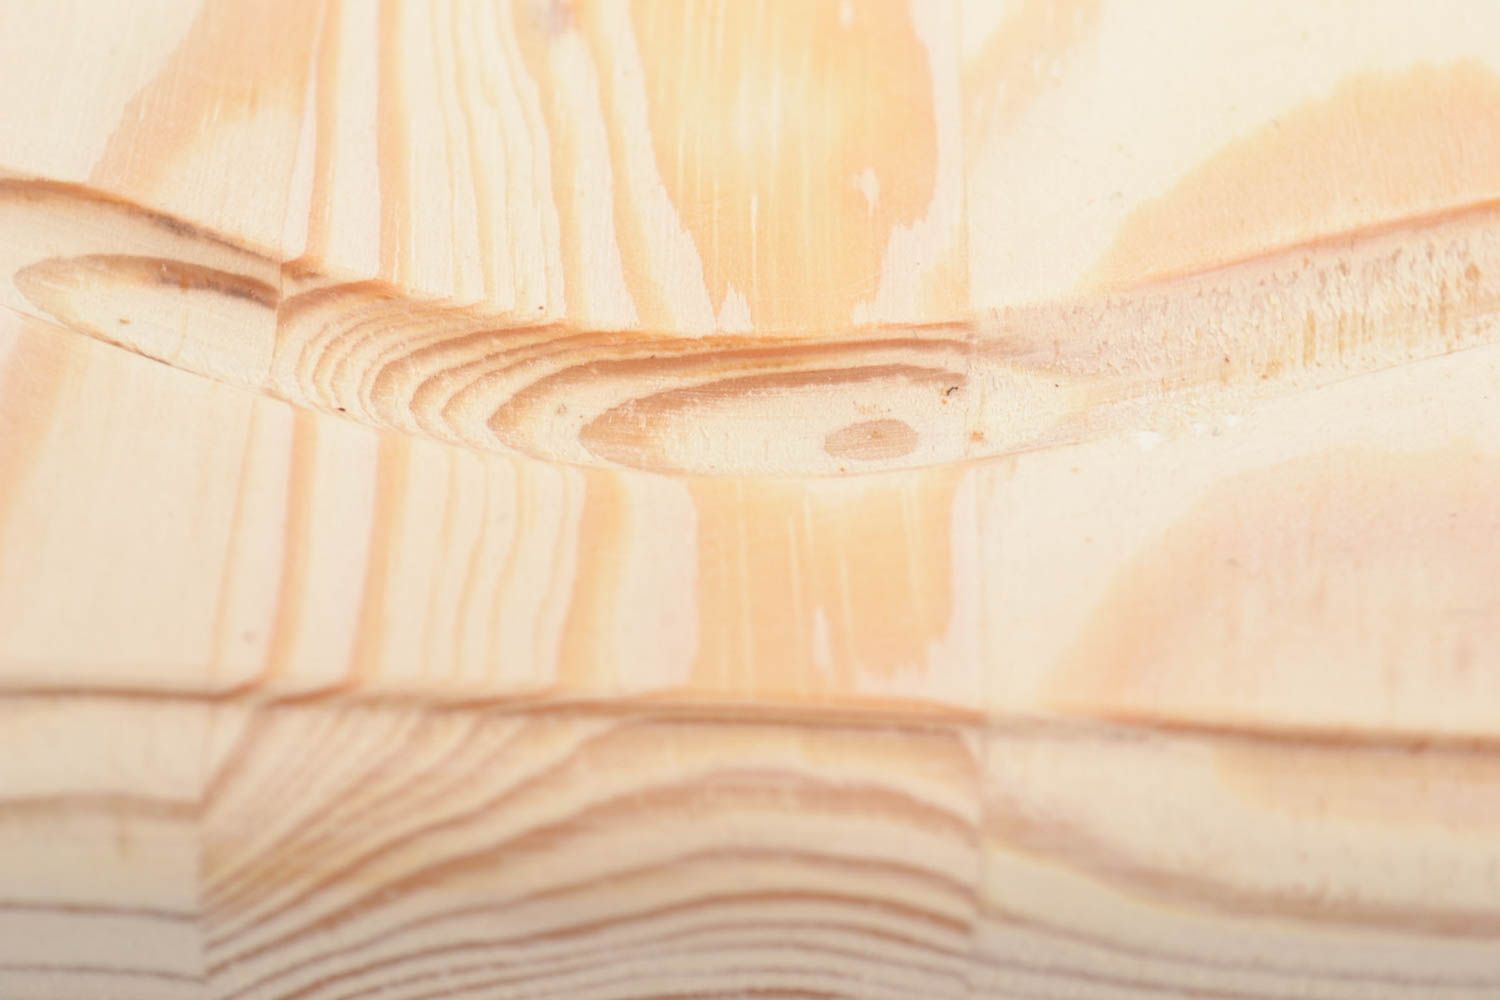 Квадратное панно из дерева заготовка для декупажа и росписи ручной работы фото 3